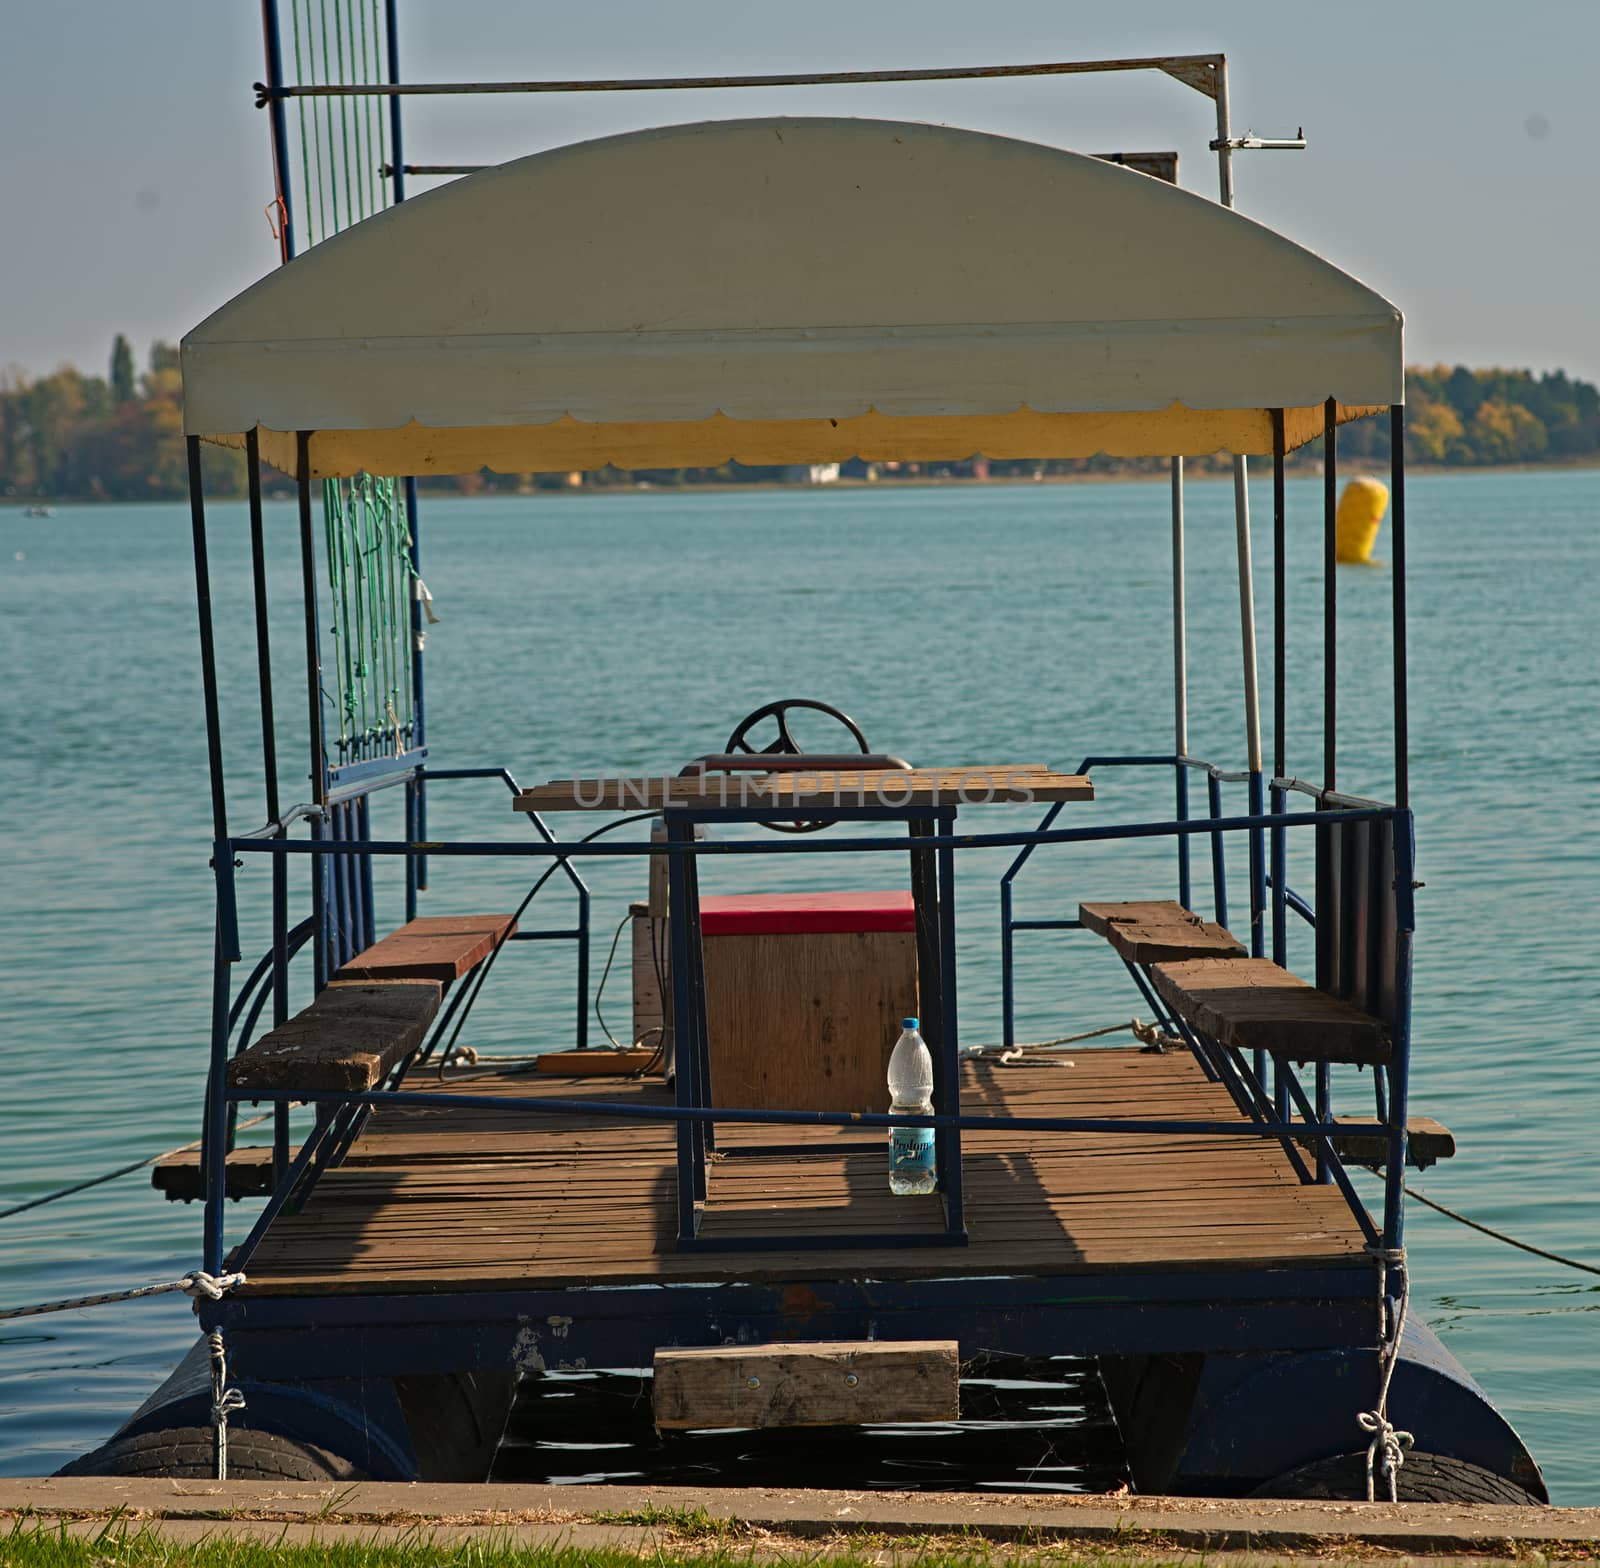 Floating raft docked at lake bank pier by sheriffkule